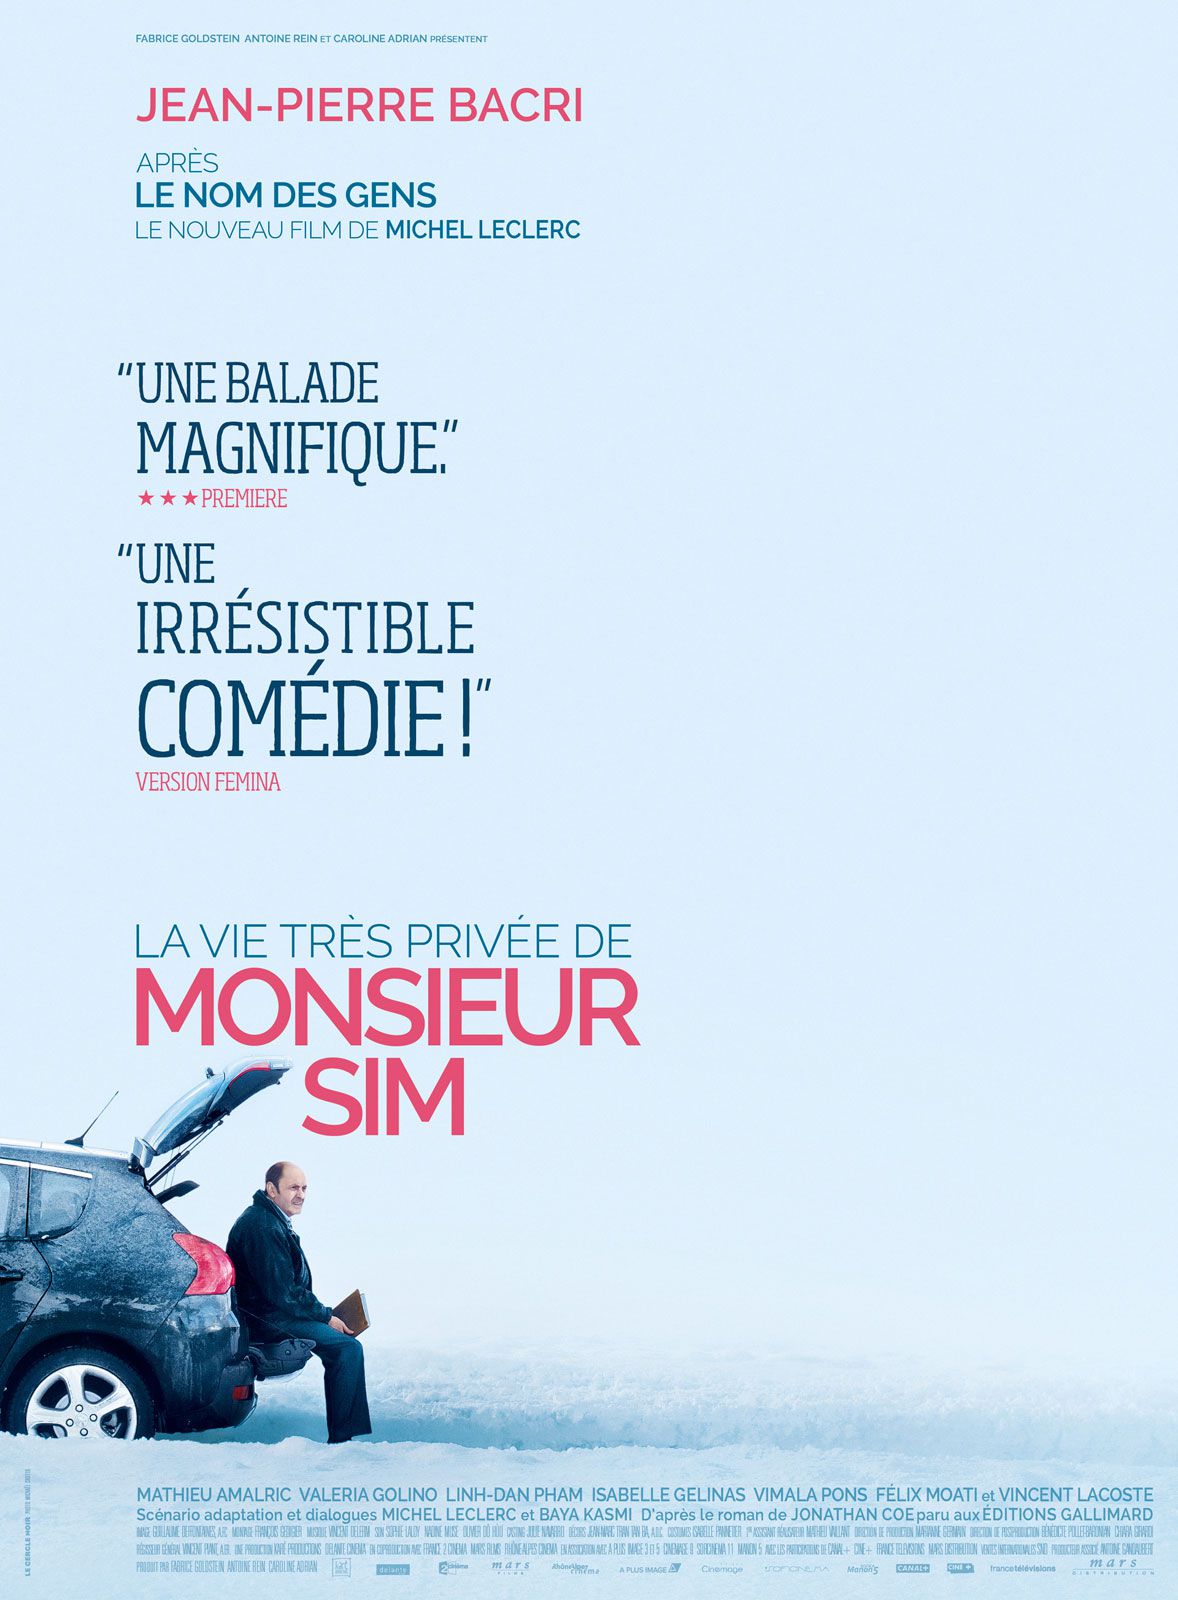 La Vie très privée de Monsieur Sim - Film (2015) streaming VF gratuit complet